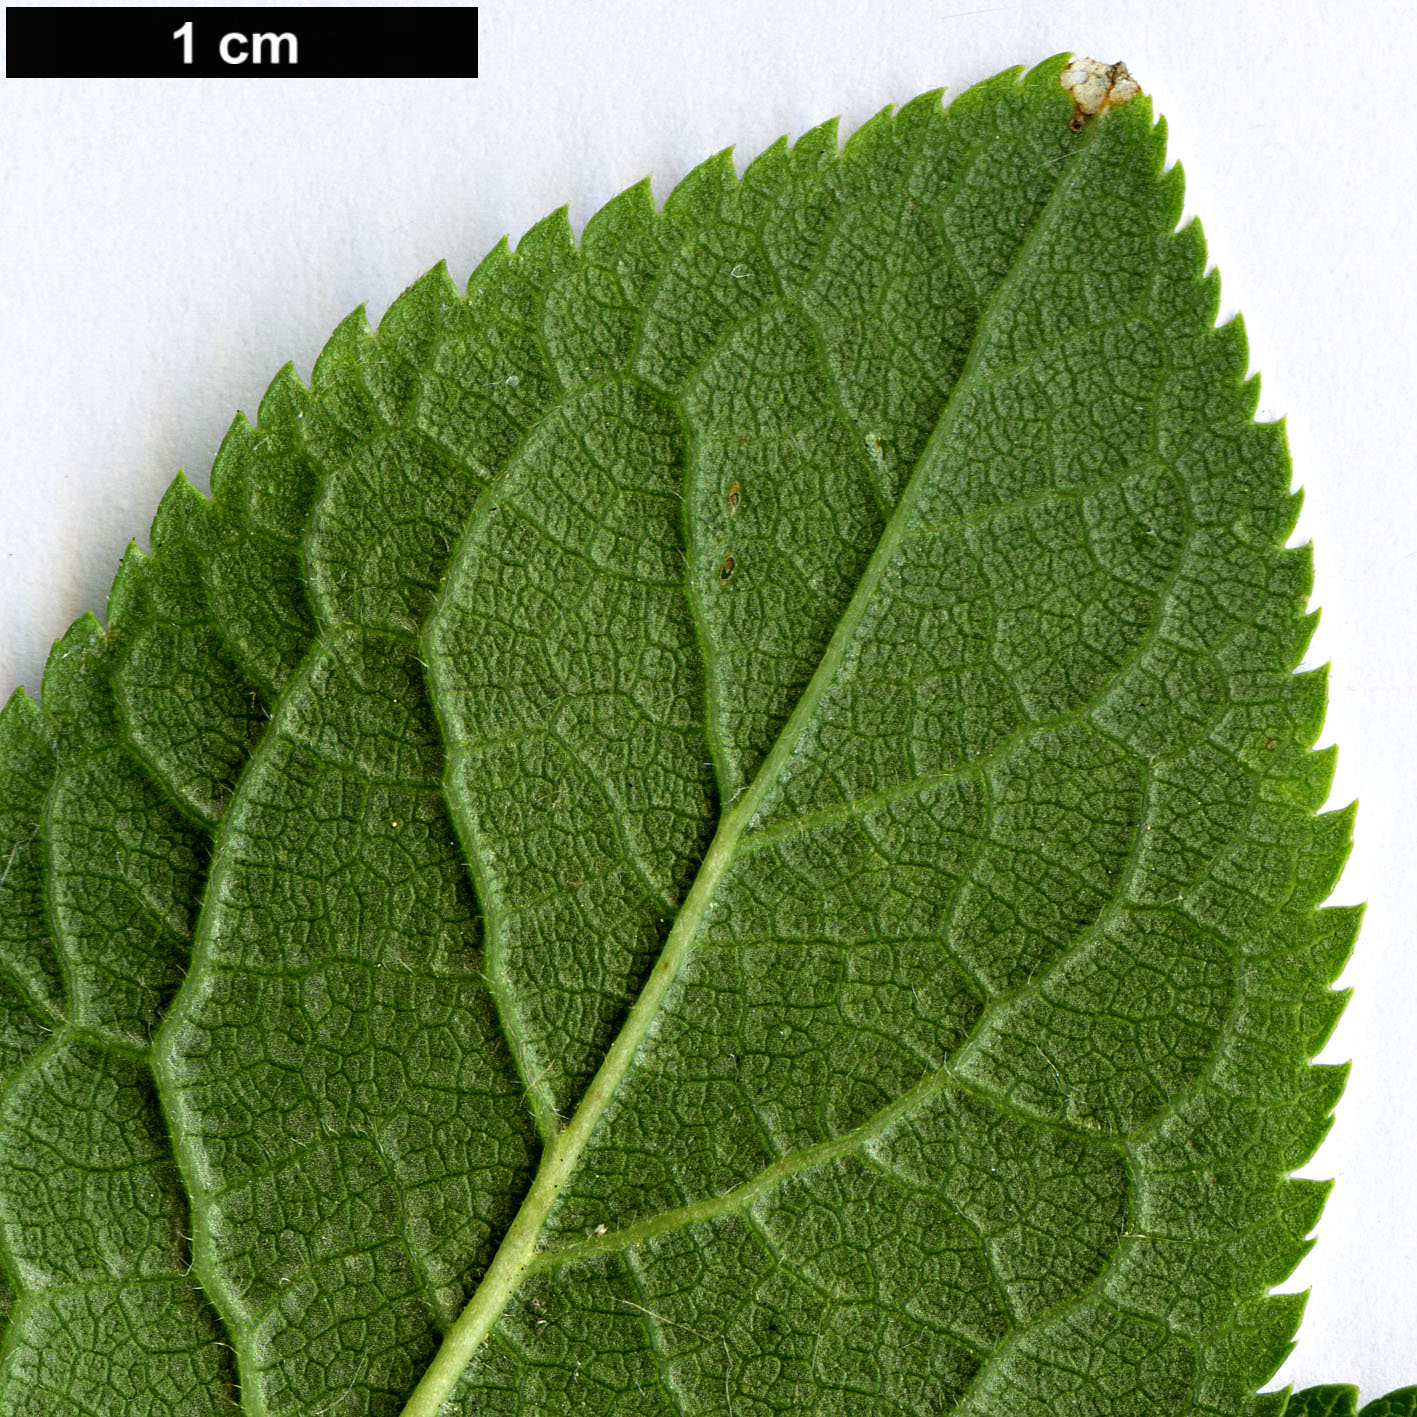 High resolution image: Family: Rosaceae - Genus: Prunus - Taxon: domestica - SpeciesSub: subsp. insititia 'Delma'